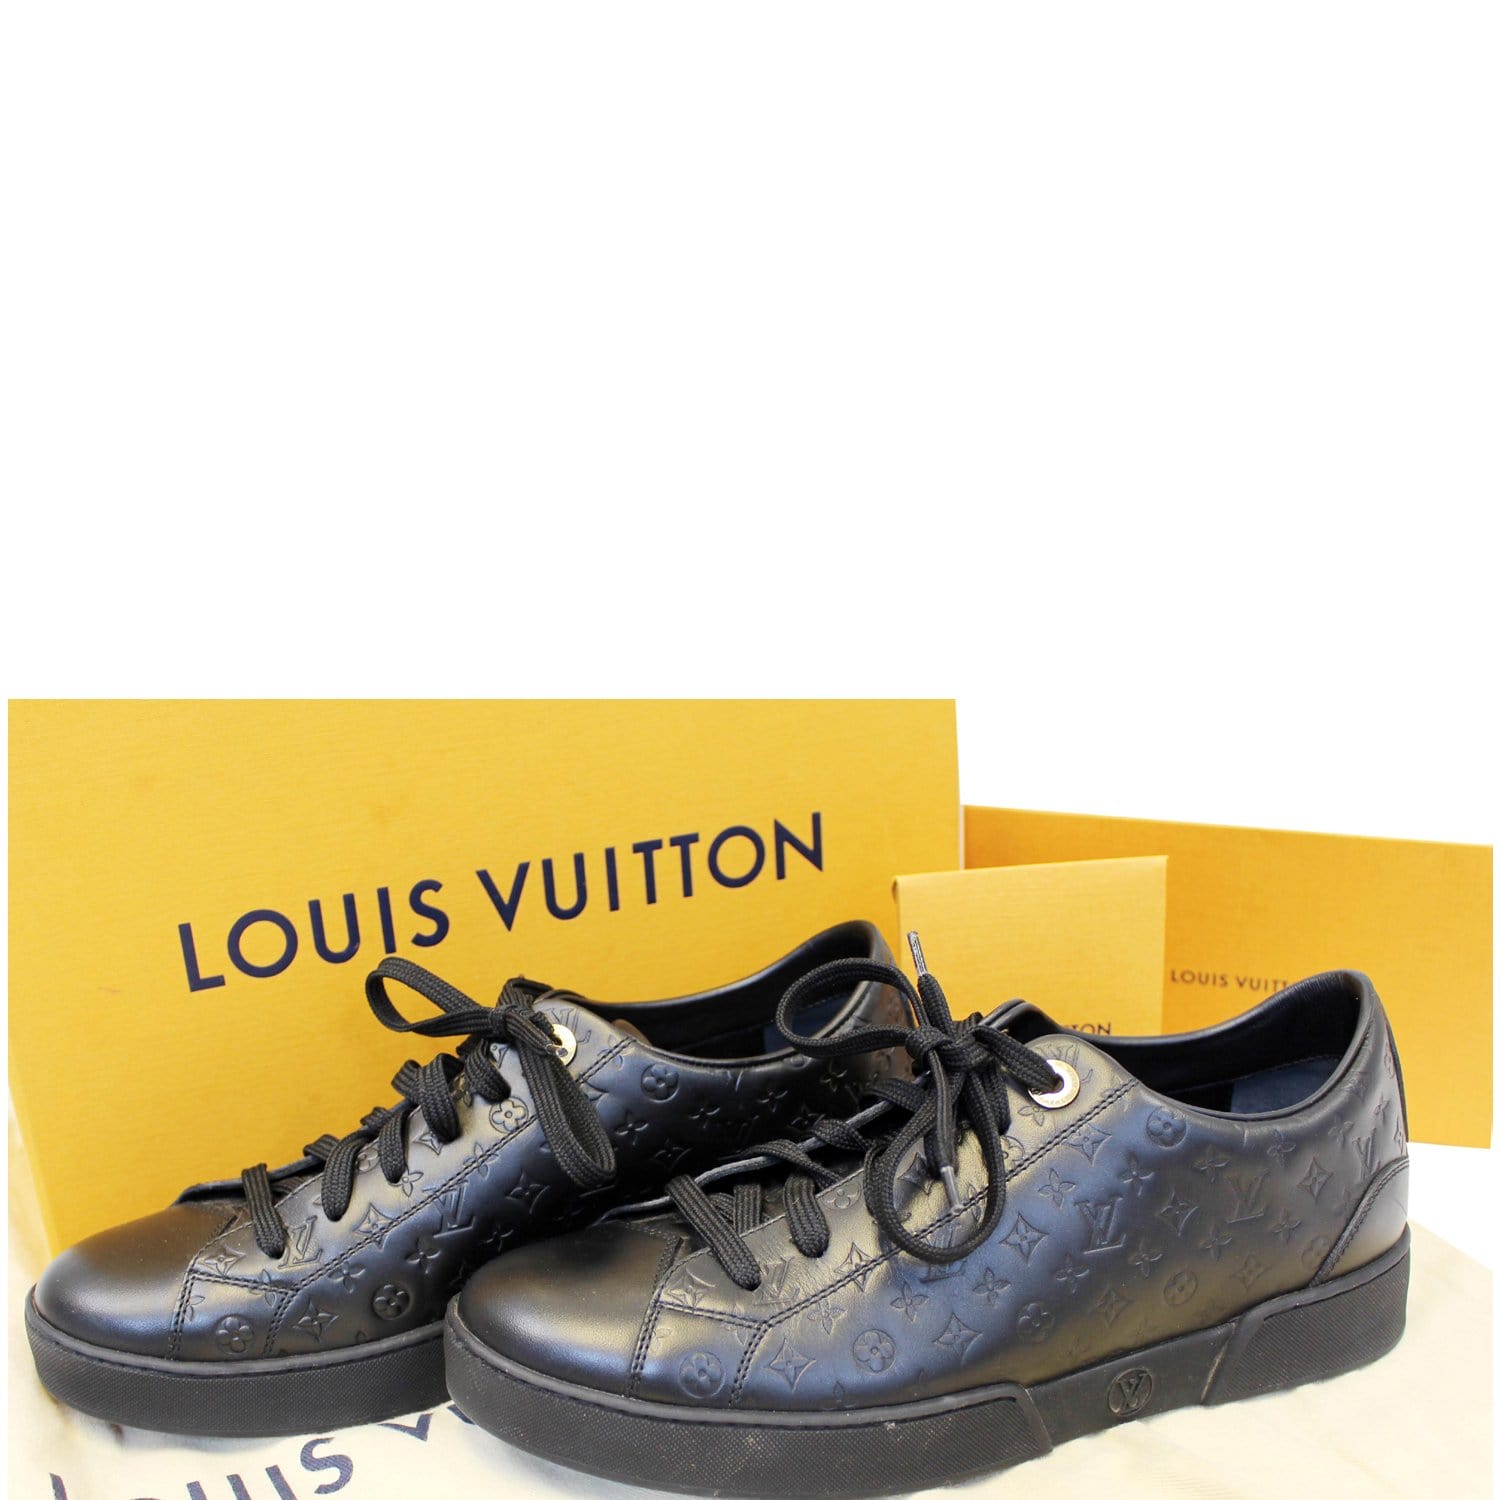 3 bước bảo quản túi Louis Vuitton để chống ố màu da thuộc